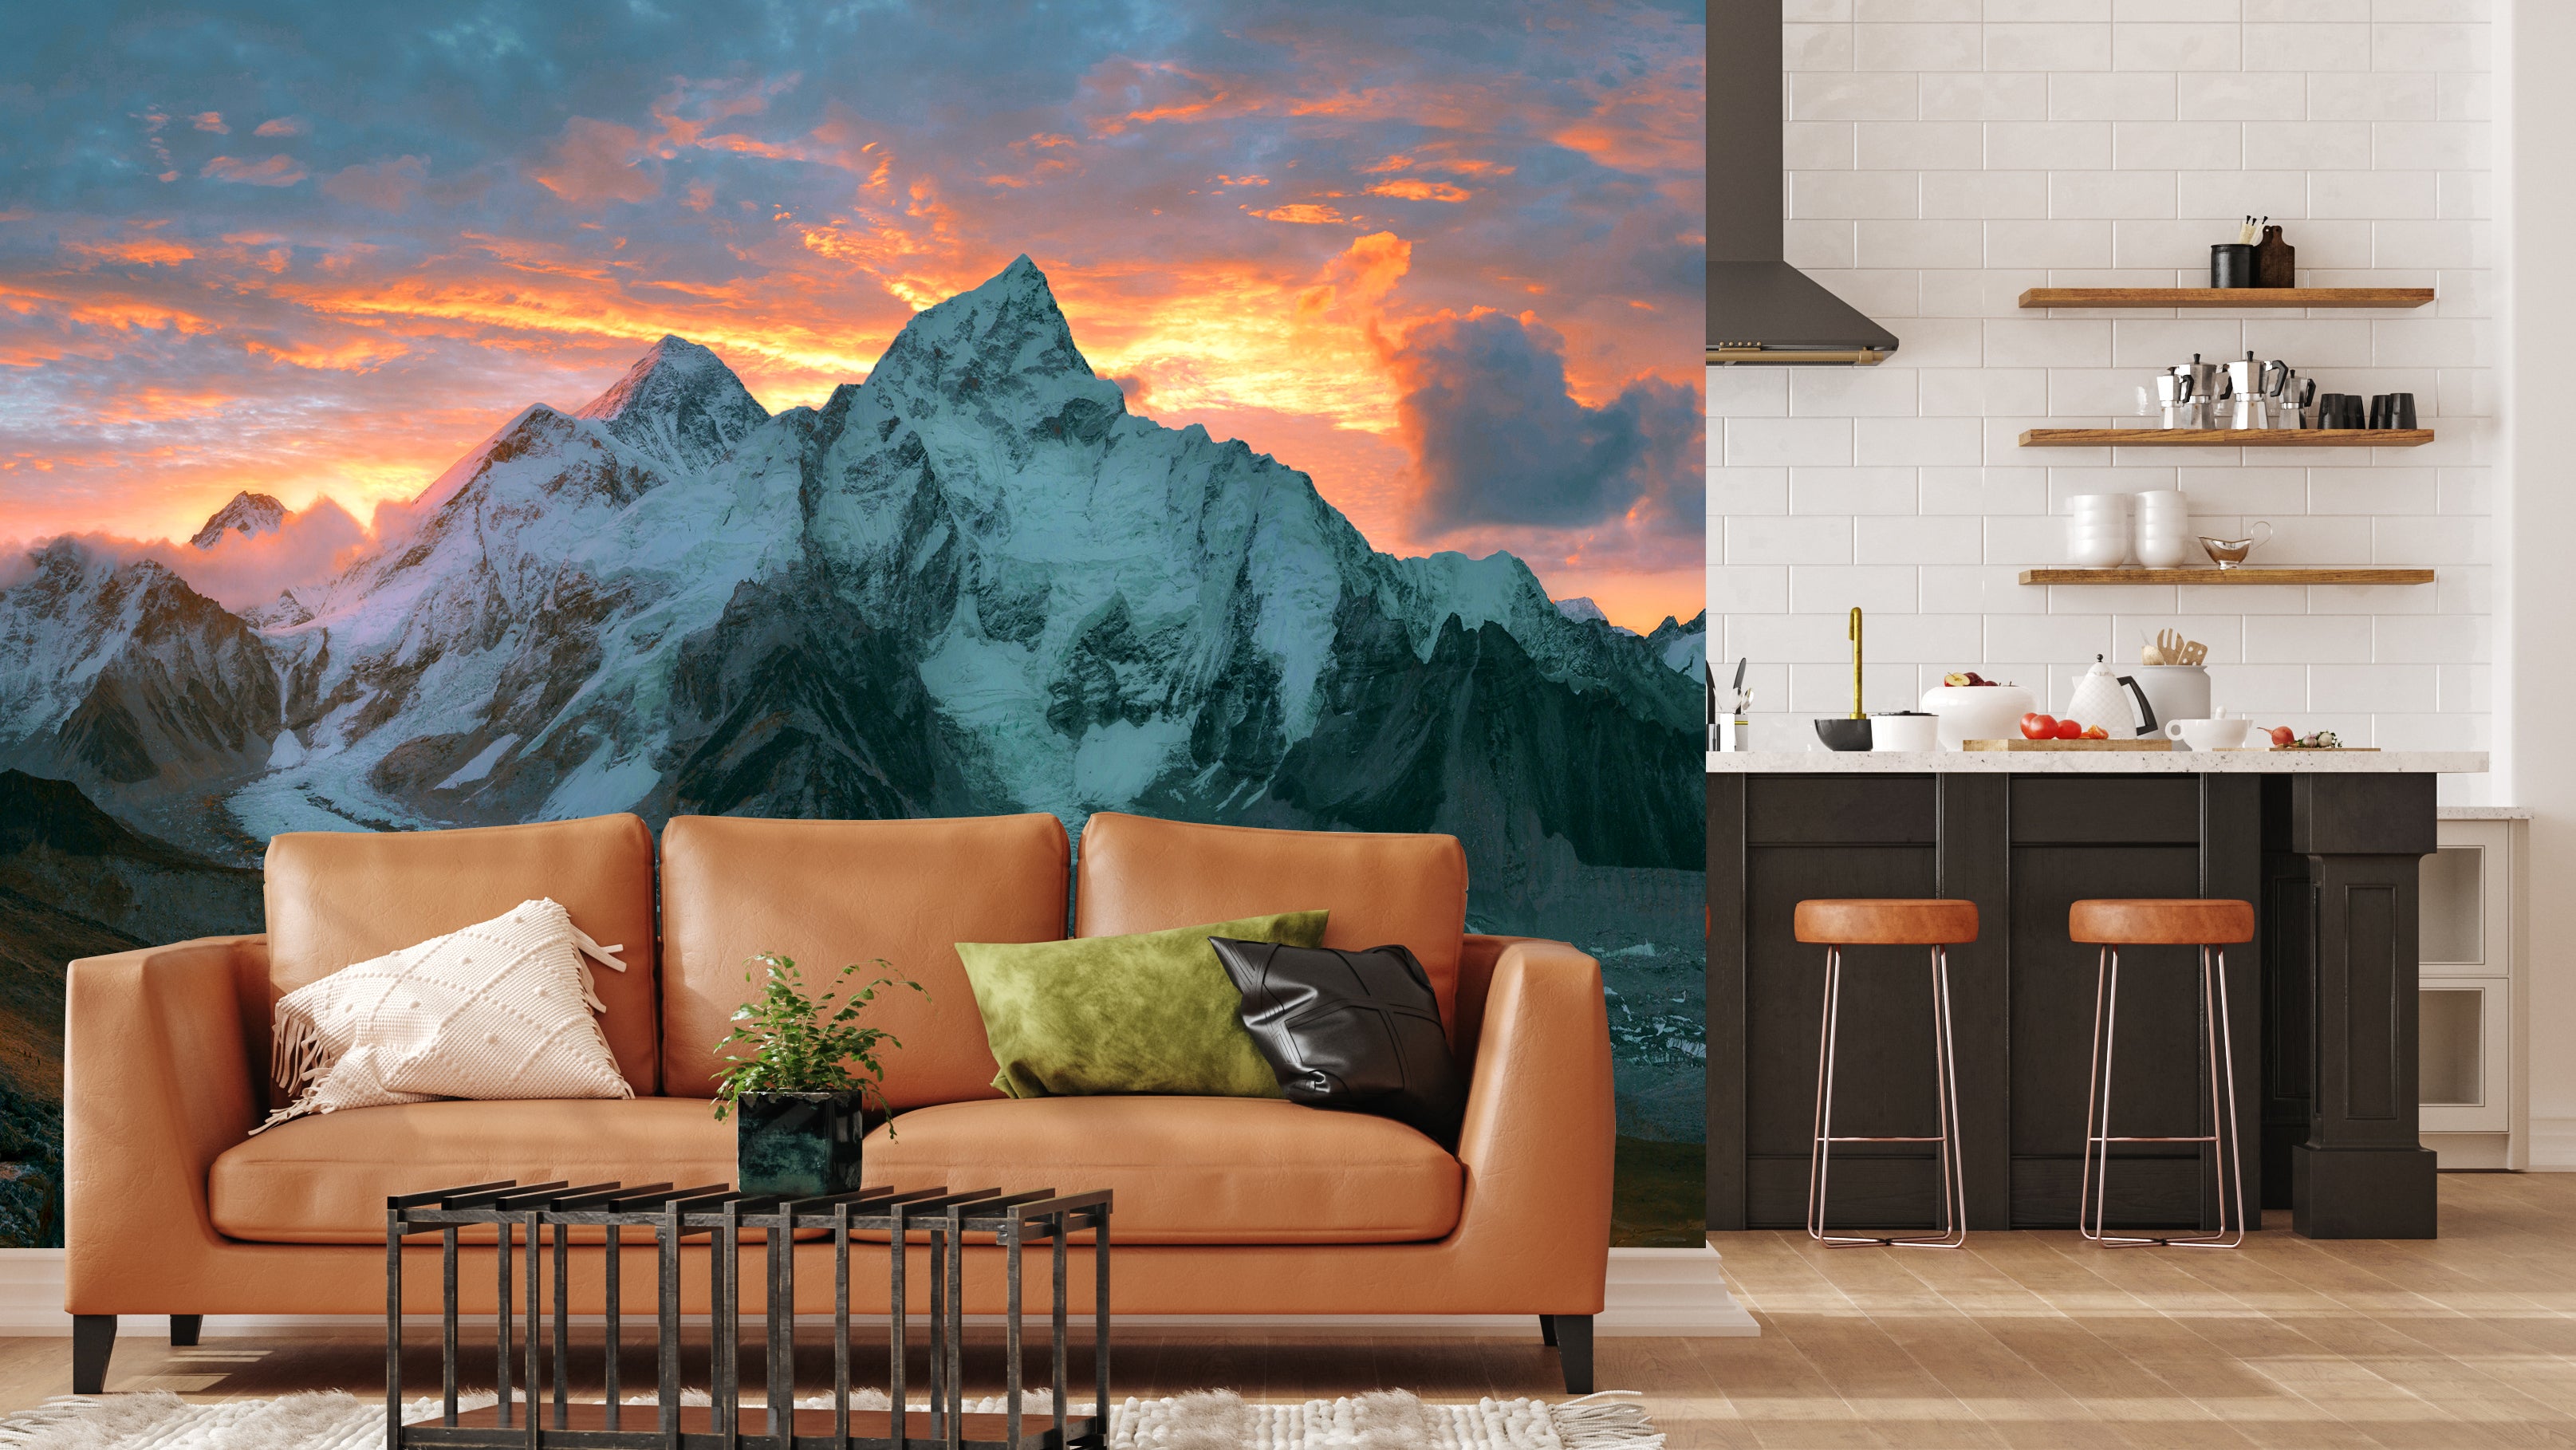 Couch im Wohnzimmer, dahinter eine Wand mit Fototapete und Bergmotiv. Hinter der Wand als Raumteiler ist die Küche erkennbar